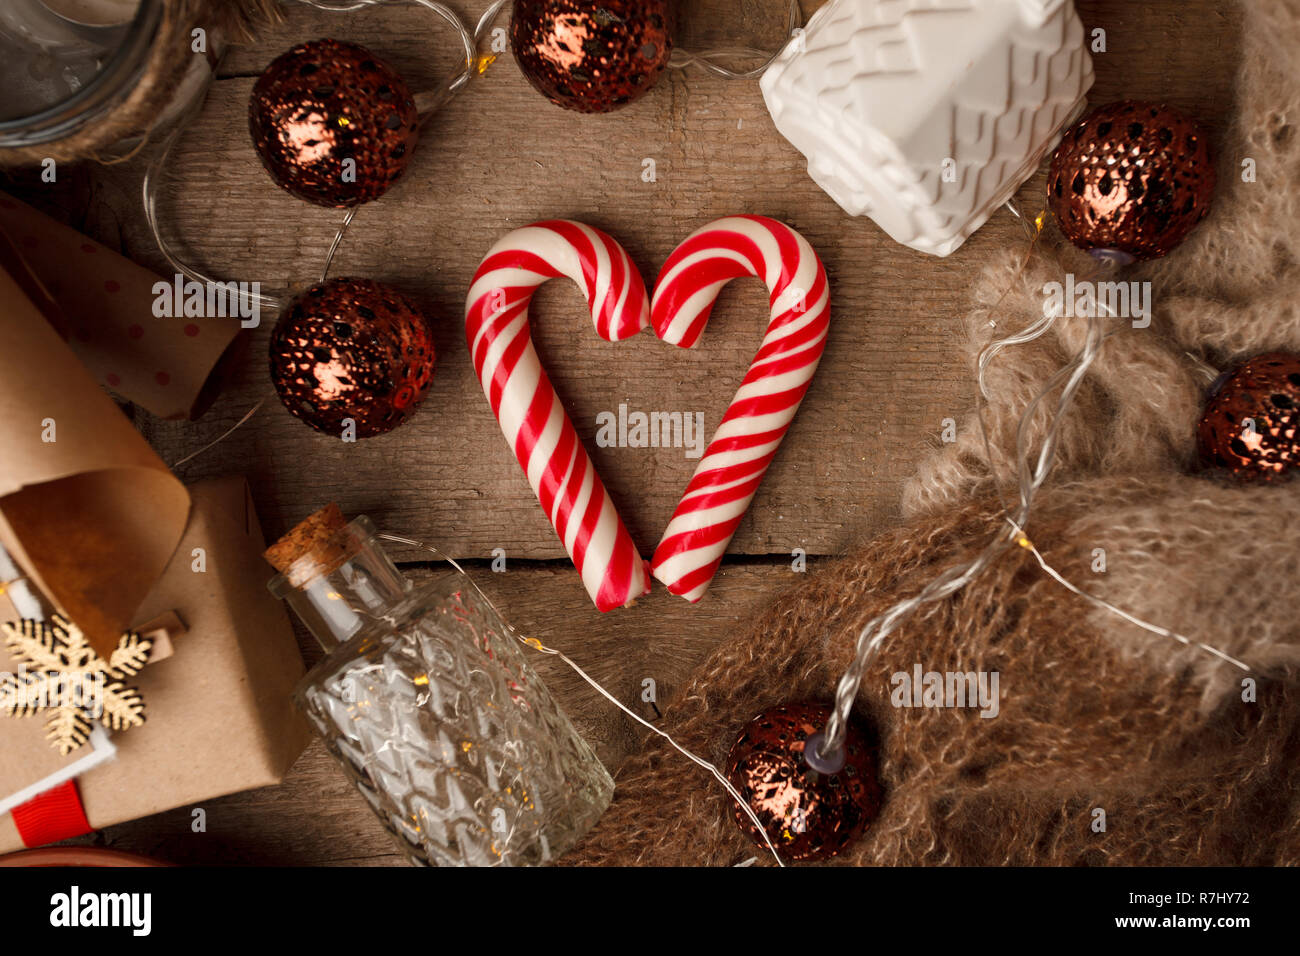 Weihnachten Stillleben mit Nüssen, traditionelle Weihnachten candy  heart-shaped, festliche Dekoration, Kraftpapier, Geschenkboxen auf vintage  Holz- Hintergrund, Tradit Stockfotografie - Alamy